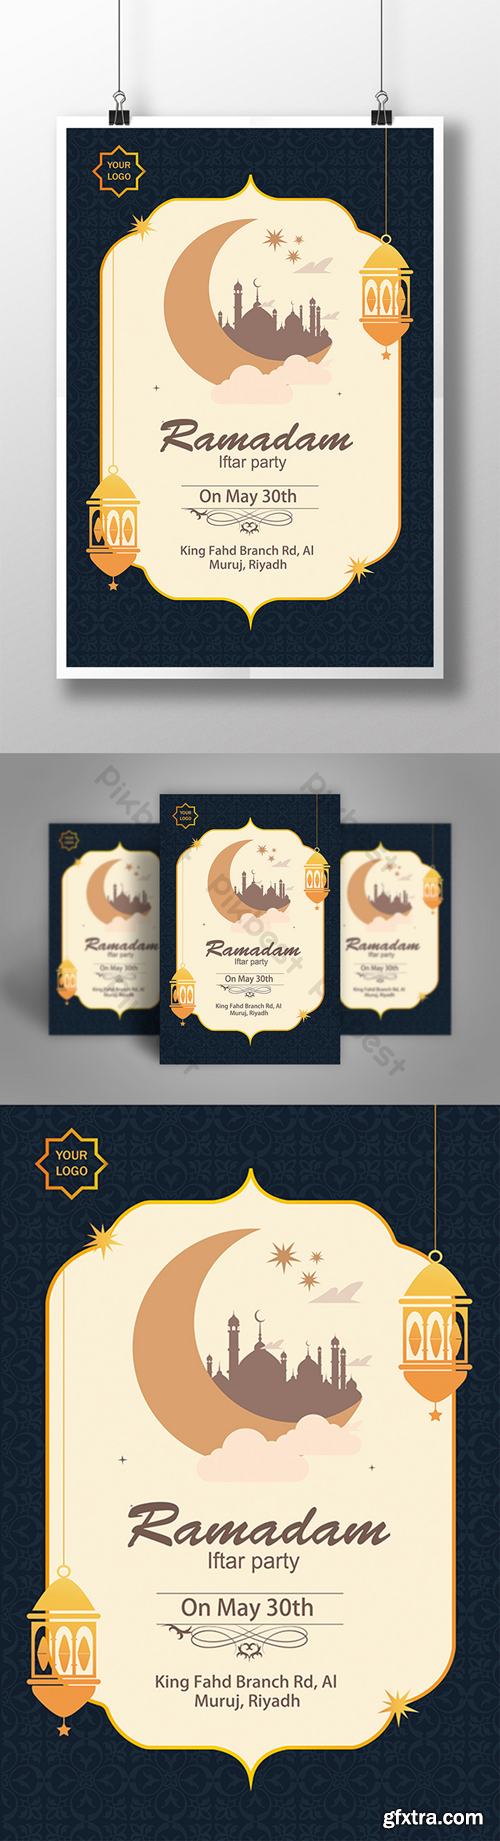 Ramadan poster design Template AI